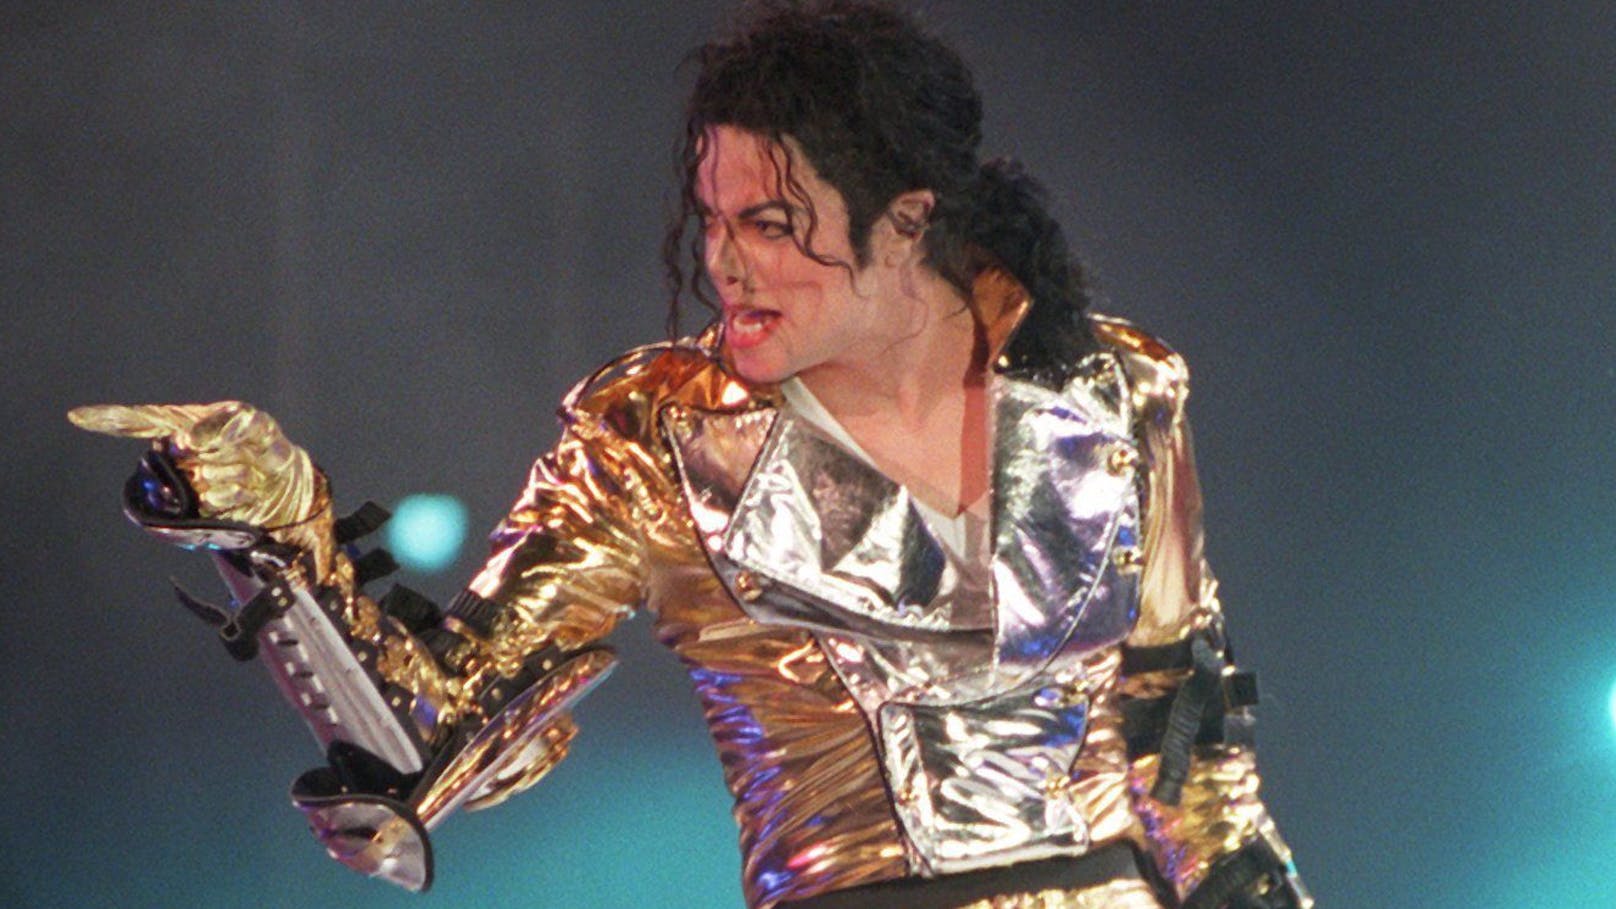 Rekordsumme! Sony erwirbt Musik von Michael Jackson